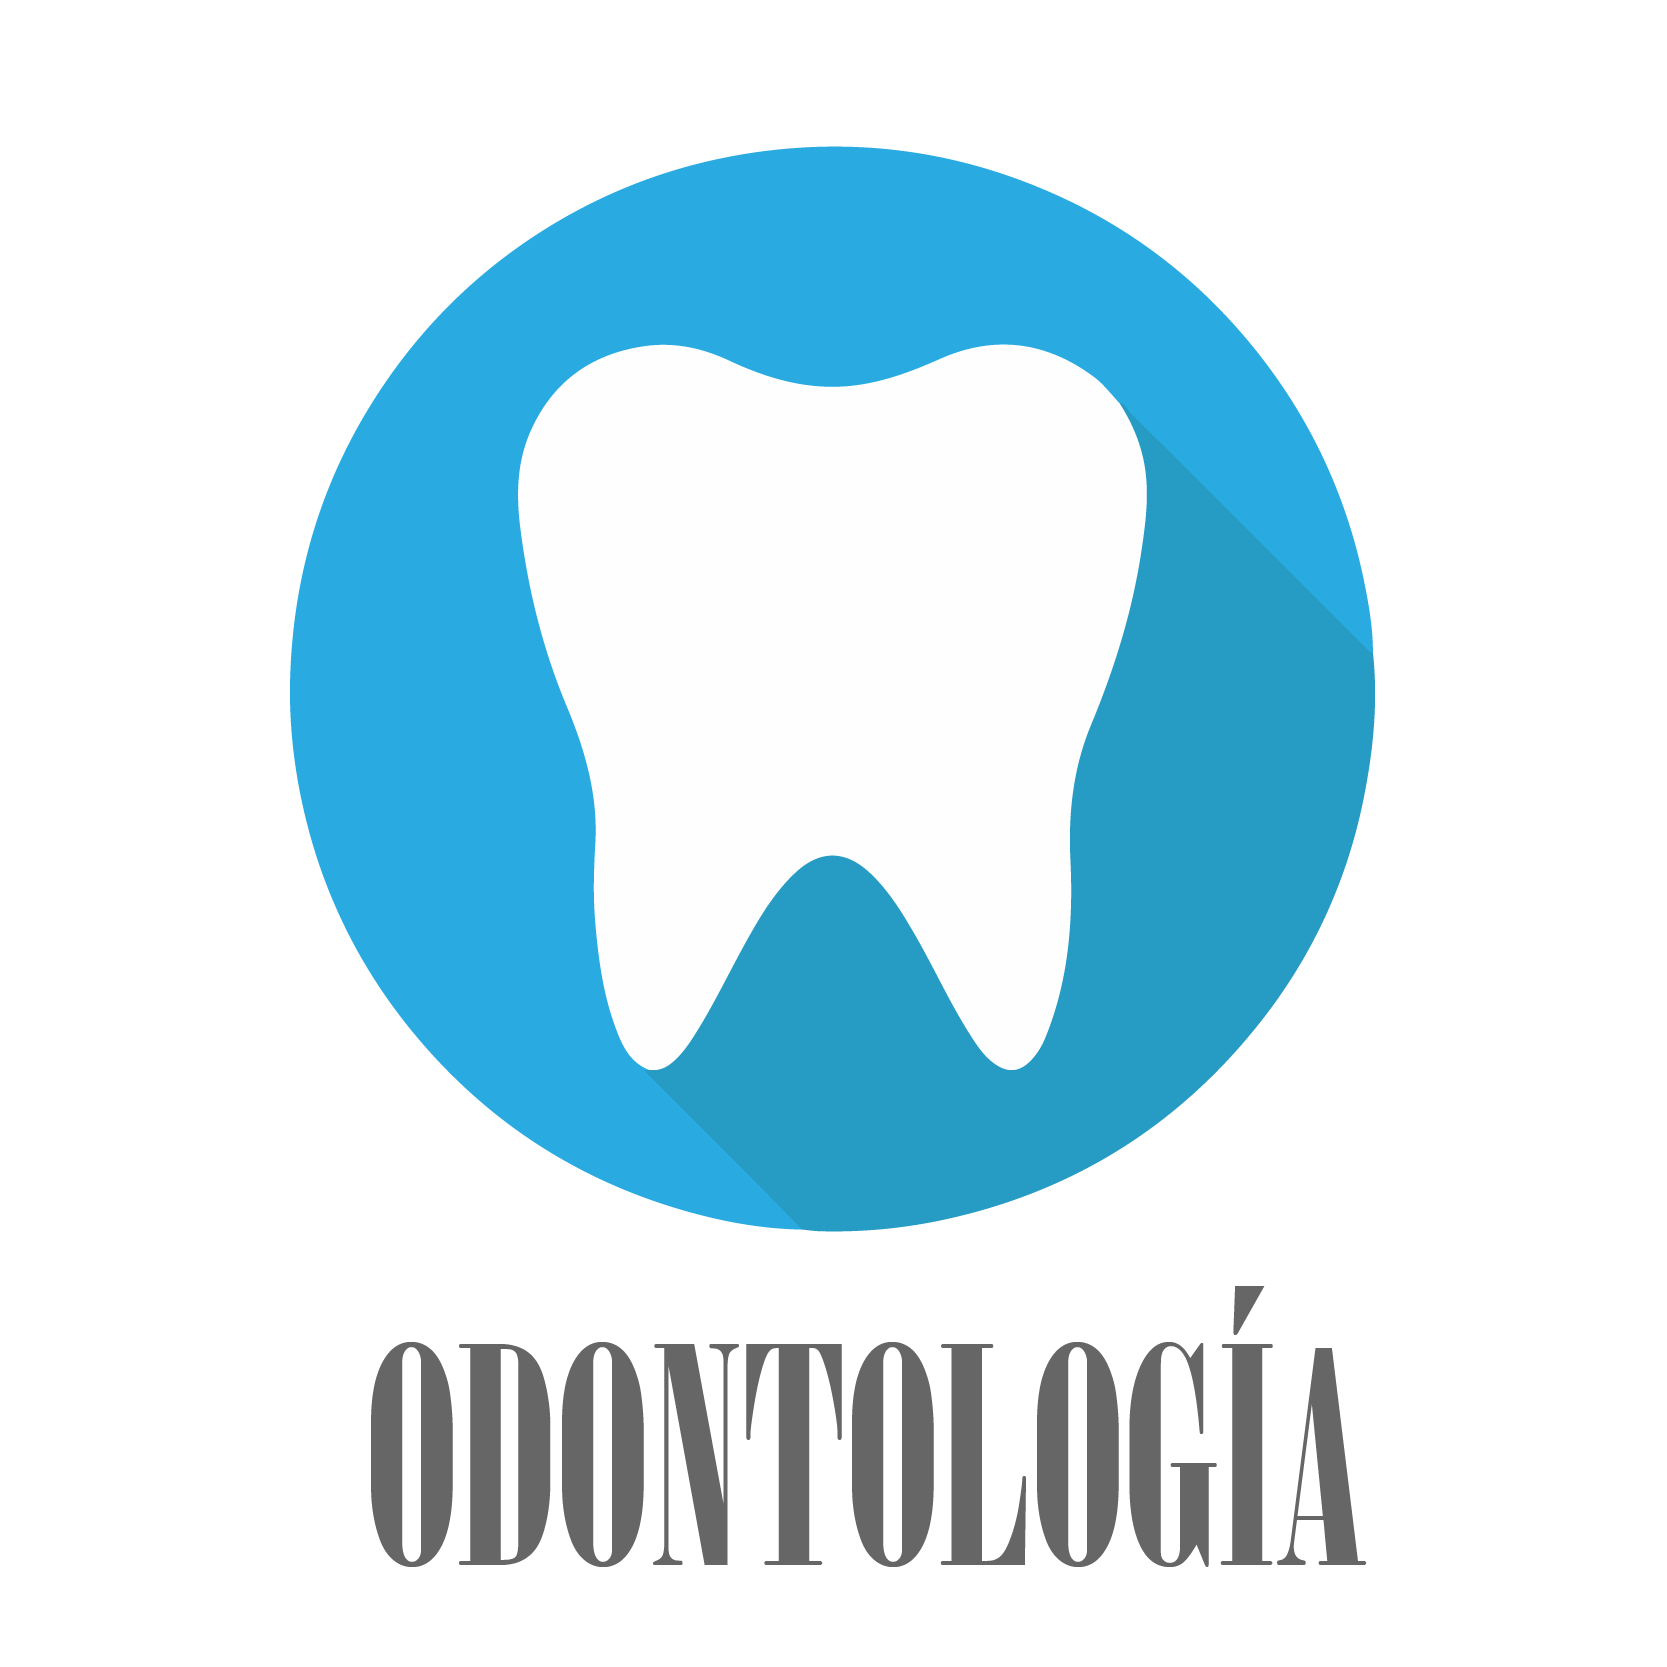 logo oodontologia2